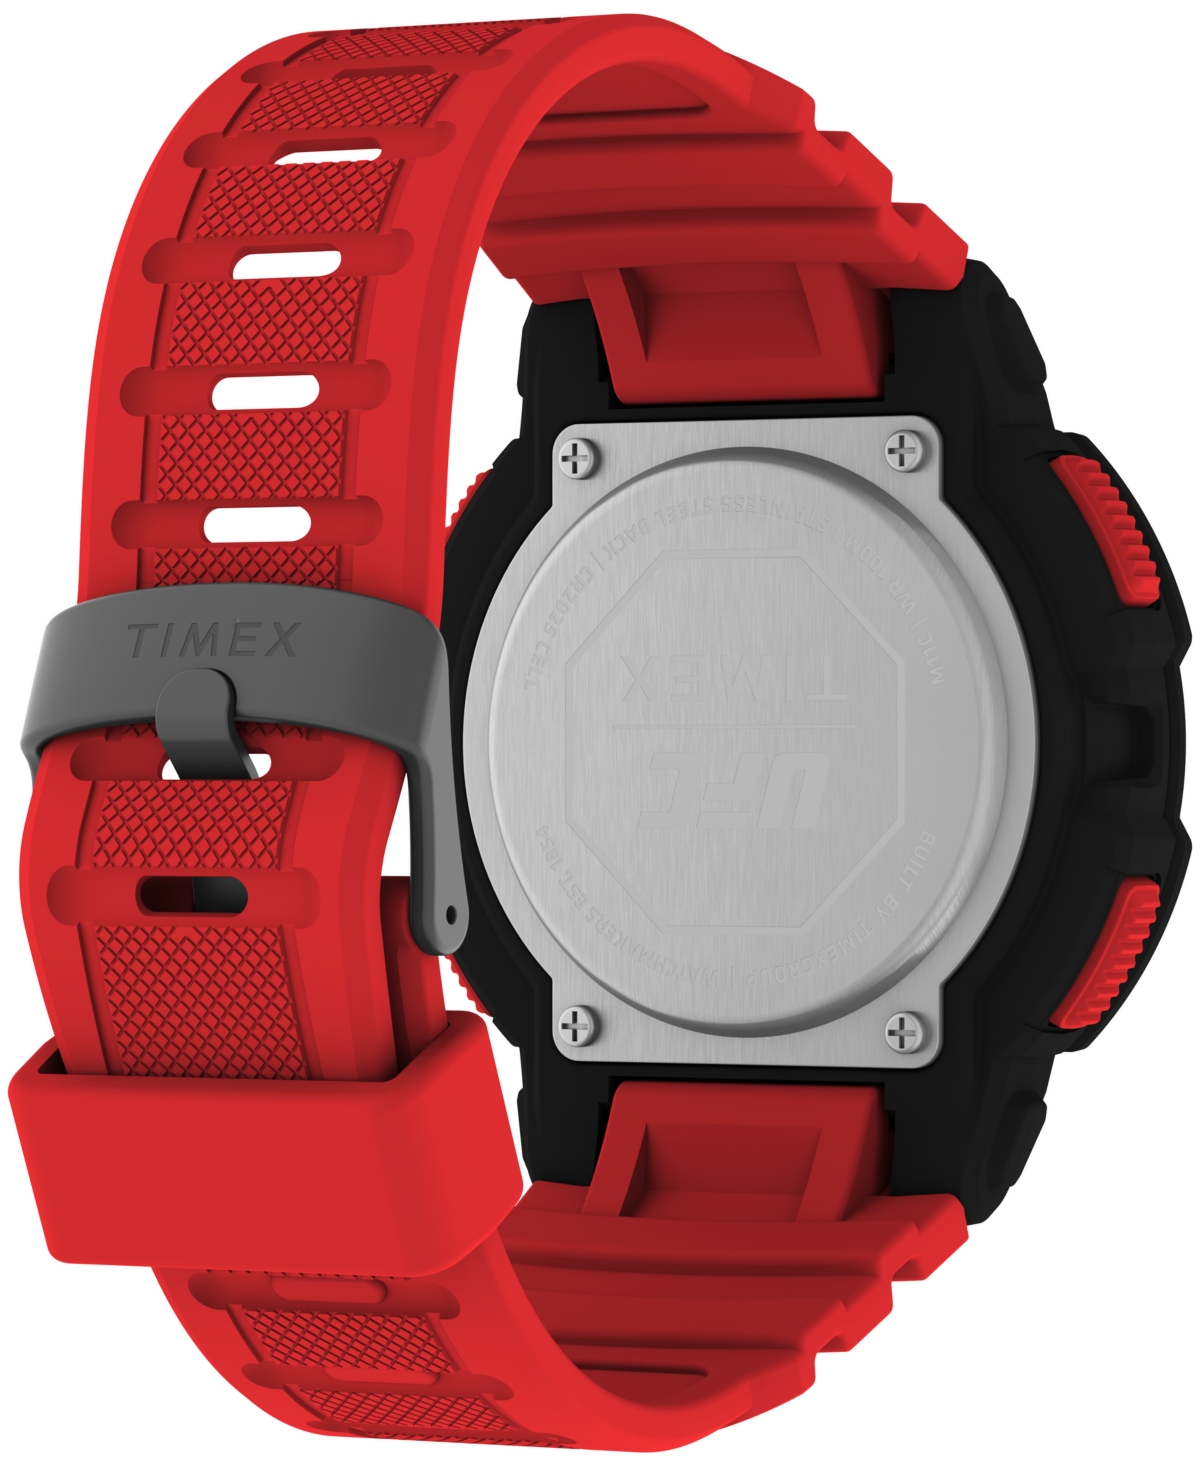 Shop Timex Men's Ufc Rumble Digital Red Polyurethane Strap 50mm Round Watch